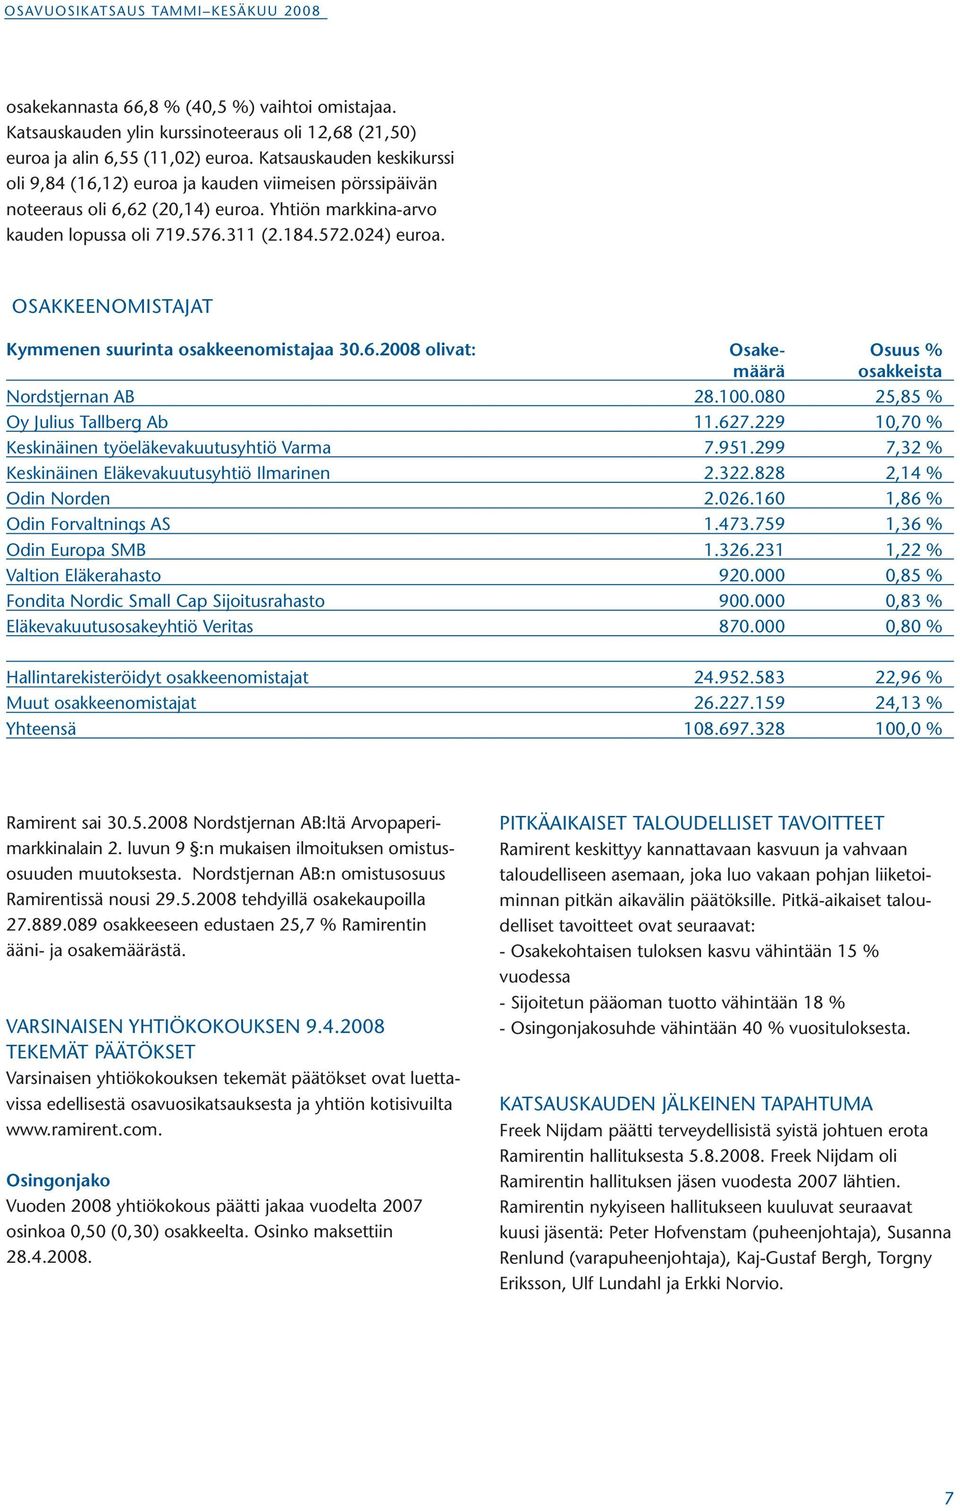 OSAKKEENOMISTAJAT Kymmenen suurinta osakkeenomistajaa 30.6.2008 olivat: Osake- Osuus % määrä osakkeista Nordstjernan AB 28.100.080 25,85 % Oy Julius Tallberg Ab 11.627.